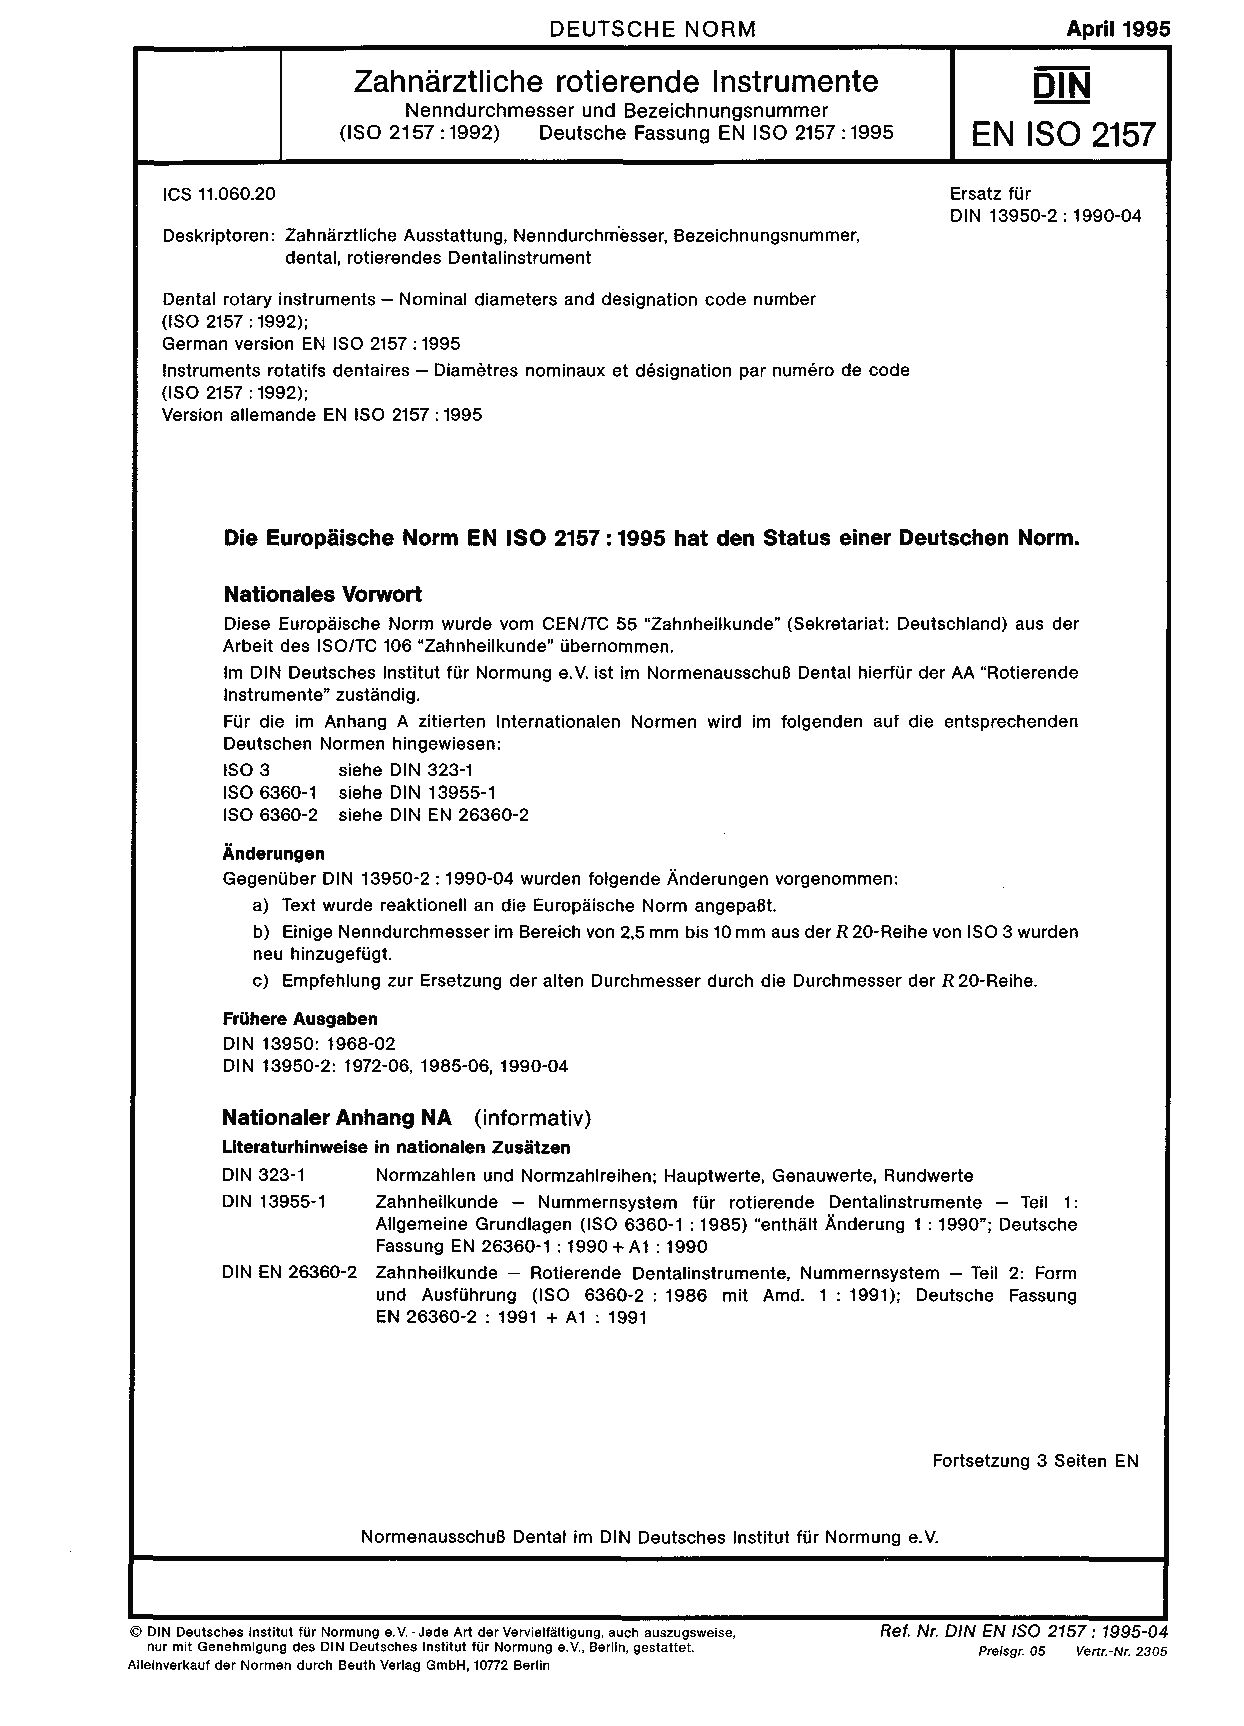 DIN EN ISO 2157:1995